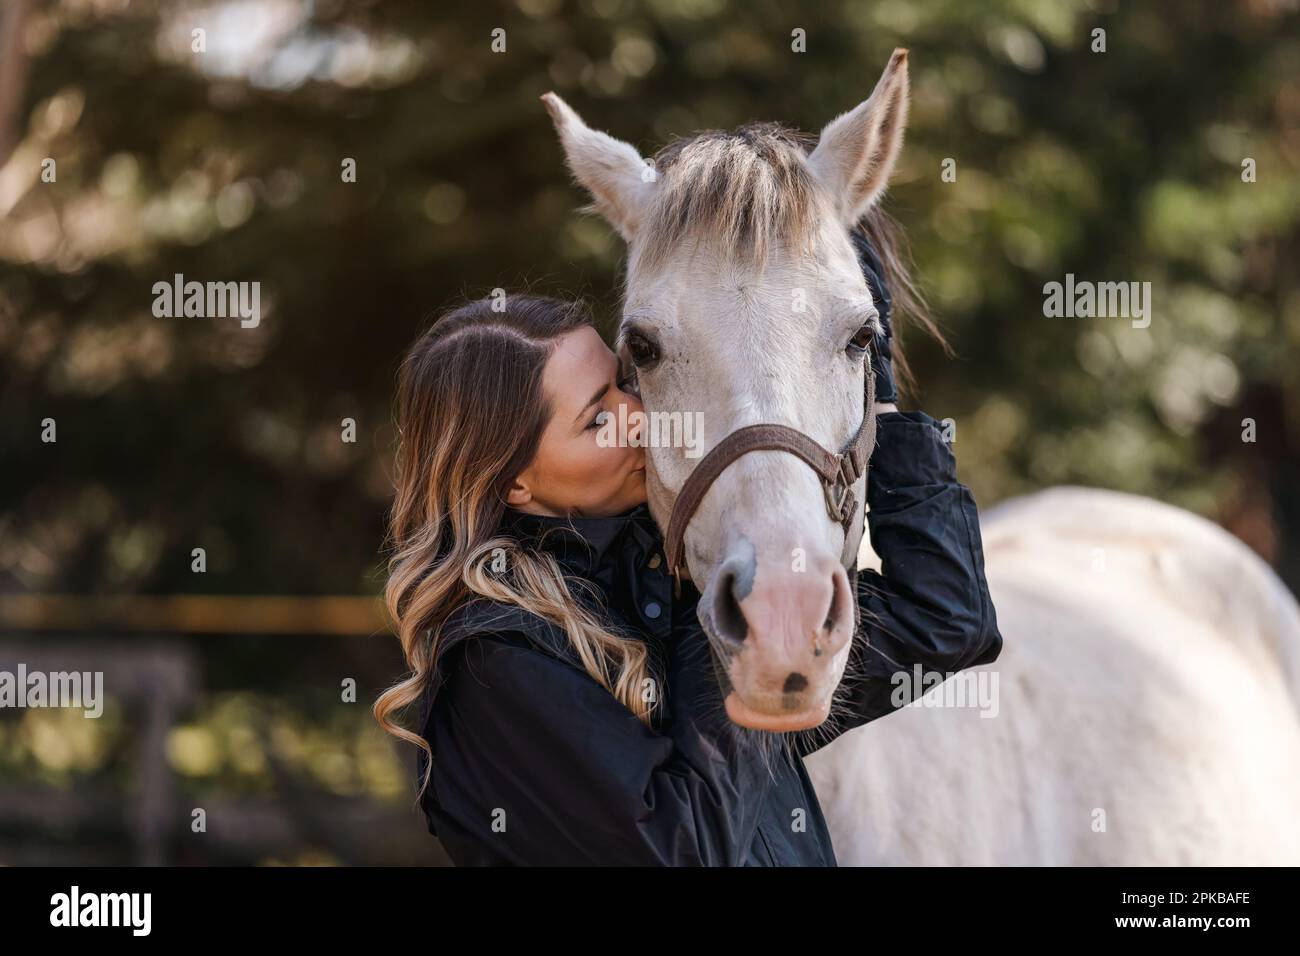 Jeune femme debout à côté des yeux blancs de cheval arabe fermé comme si elle s'embrasse ou sentait, brouillé arbre arrière-plan, gros plan Banque D'Images